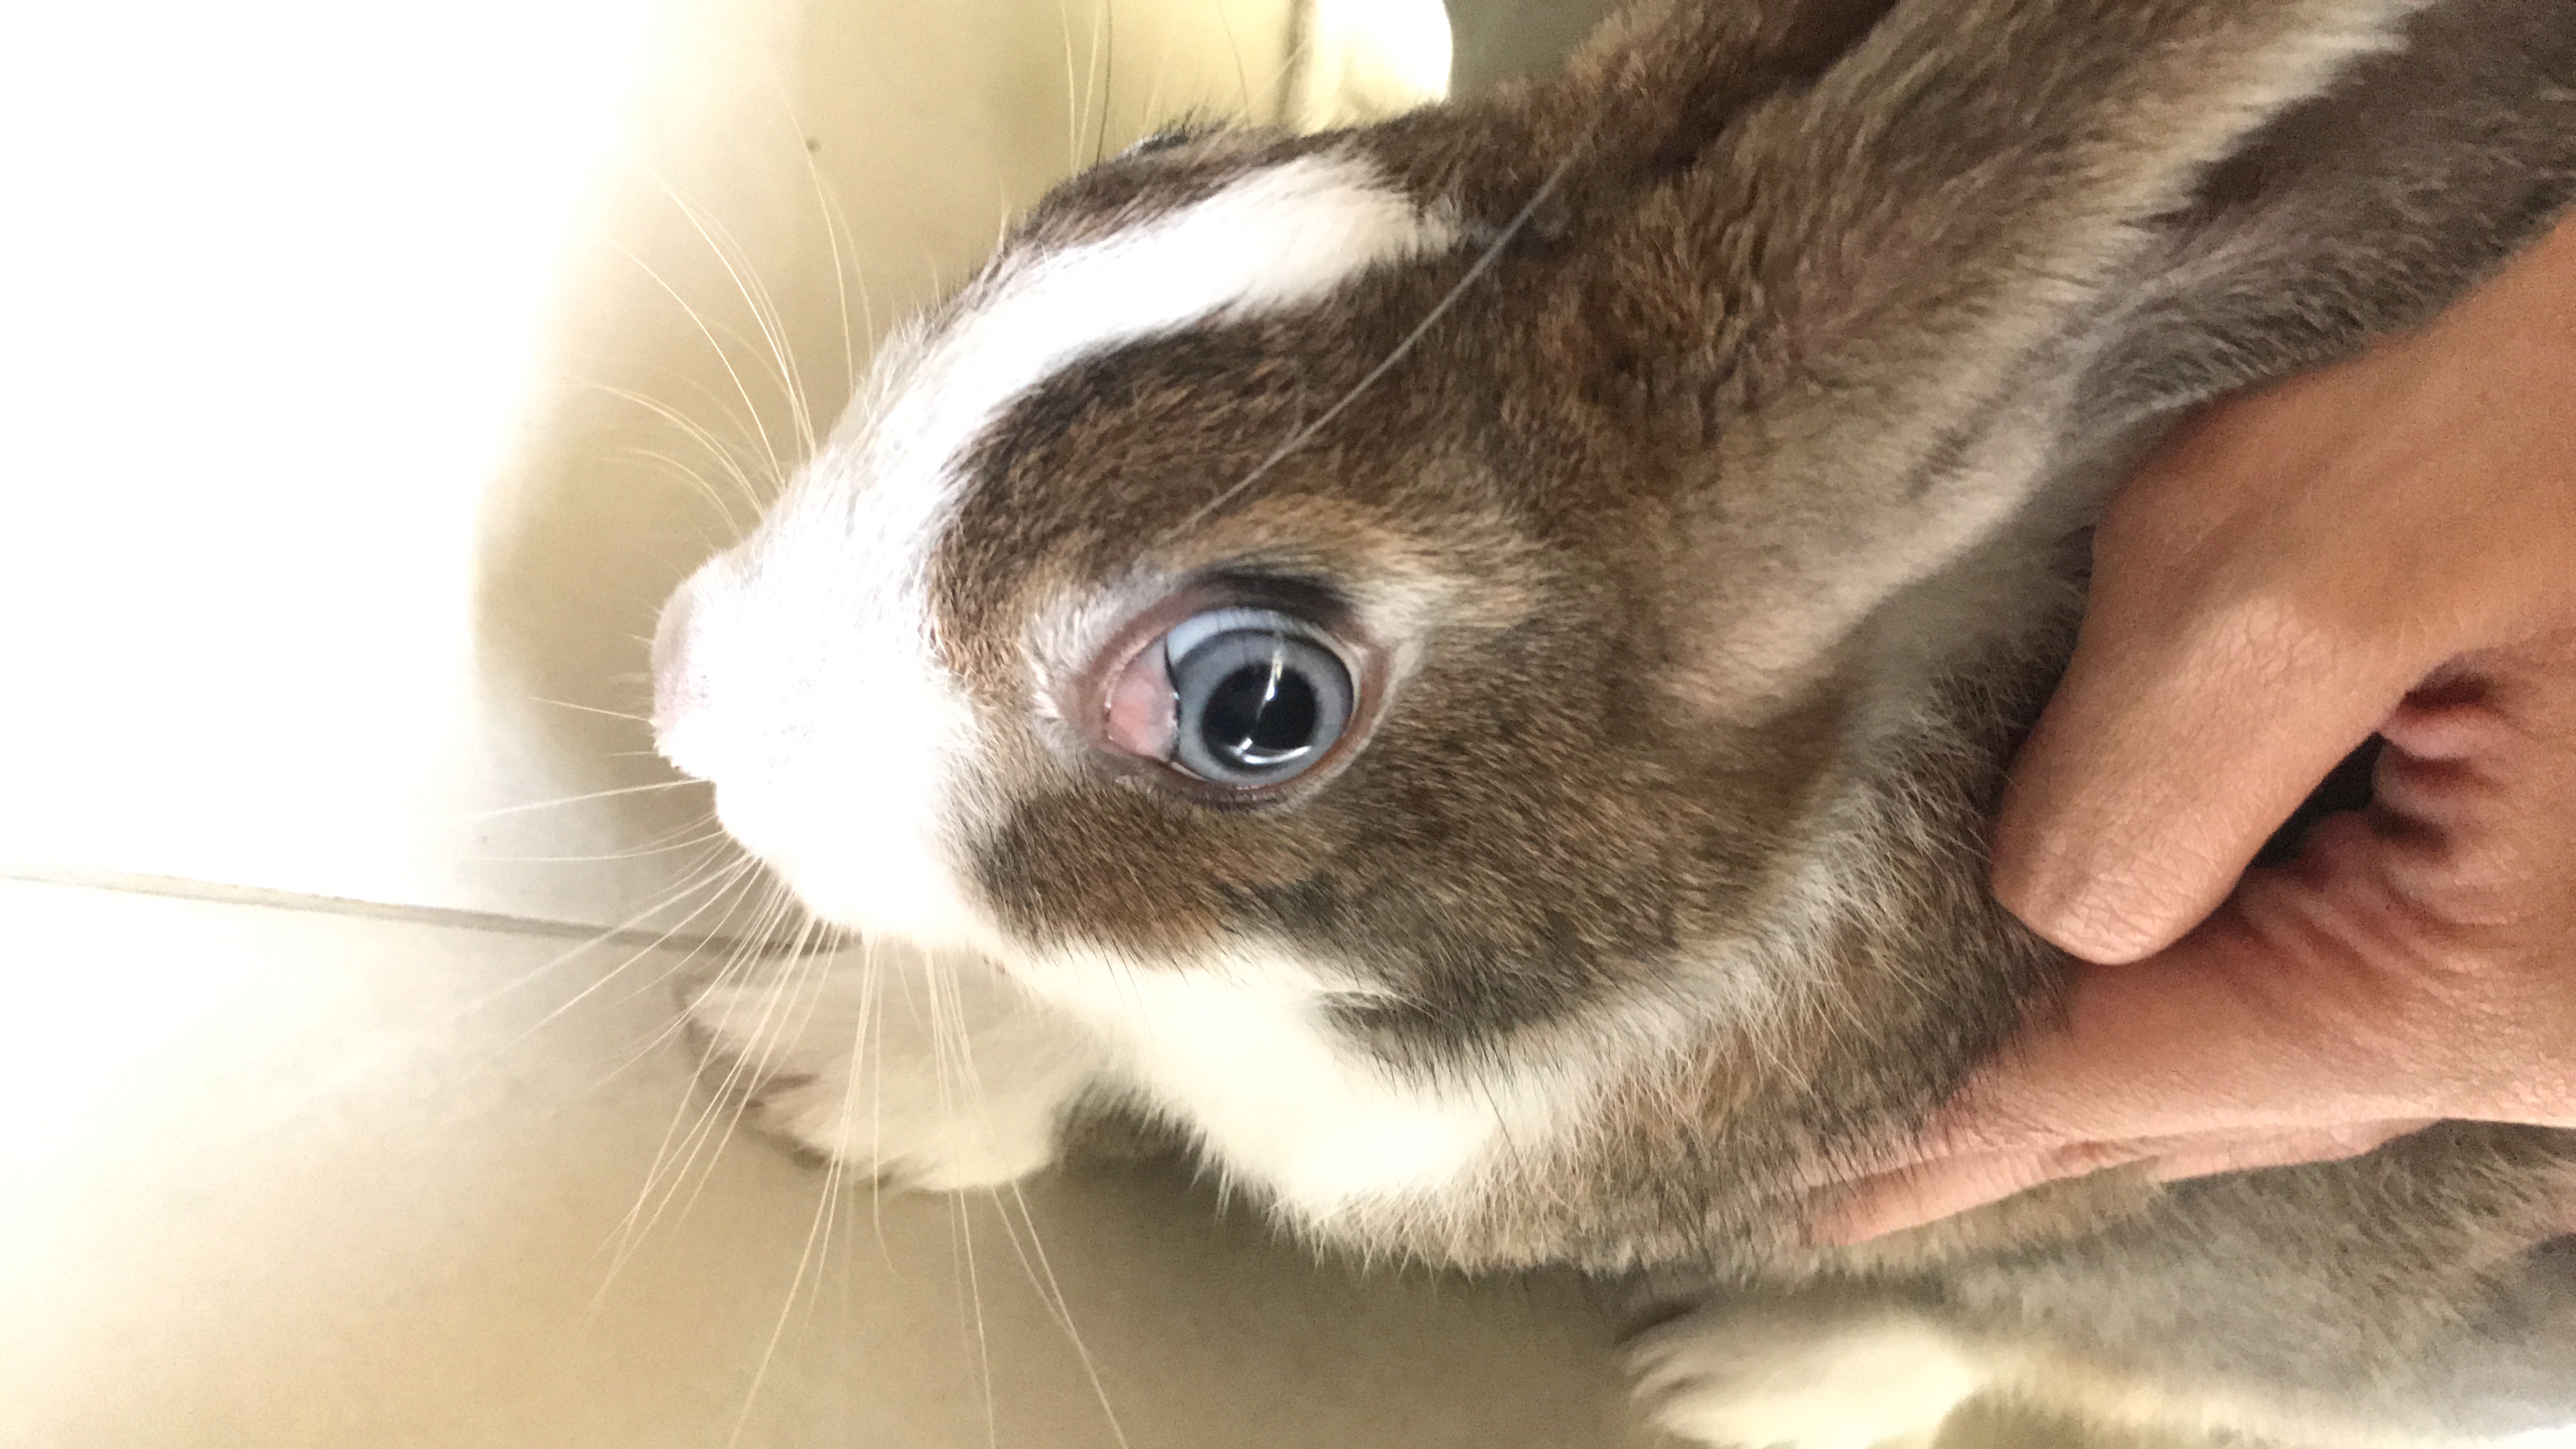 กระต่ายตาบวม มีเนื้อปูดออกมาทั้ง2ข้าง น้องเป็นอะไรครับ